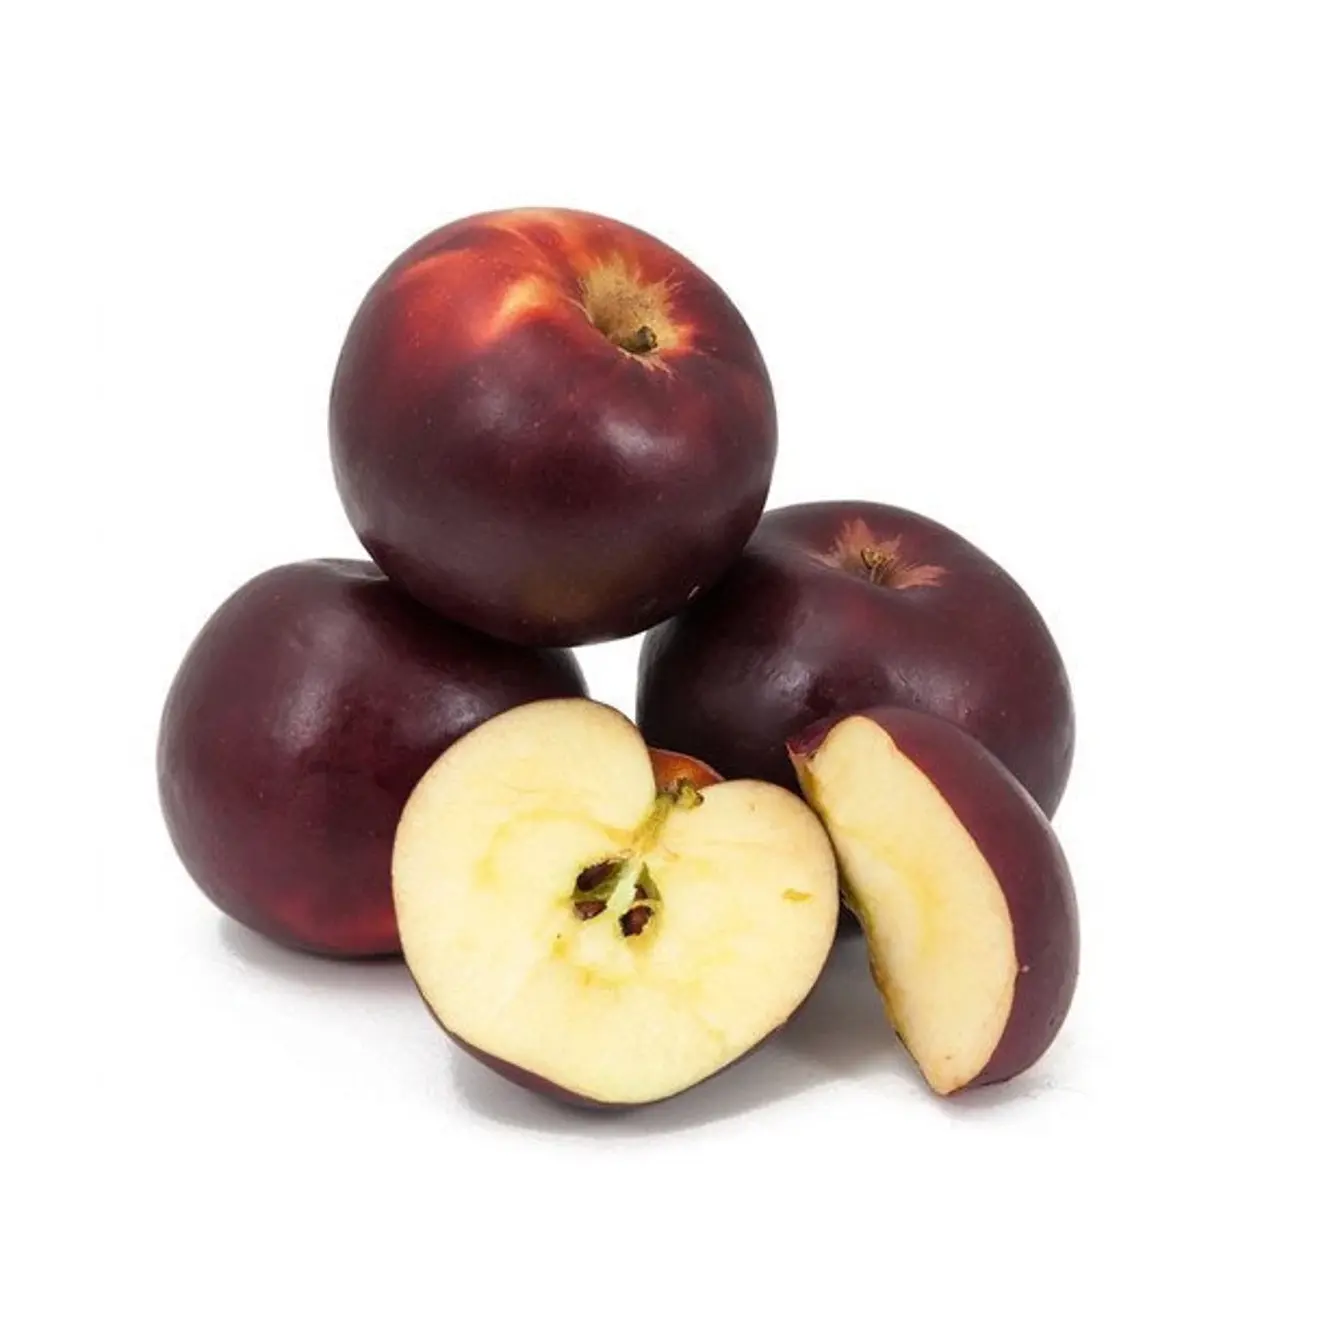 Più alta qualità miglior prezzo fornitura diretta mele di Gala reale | Succoso rosso fresco Liberty mele sfuse fresche Stock per le esportazioni